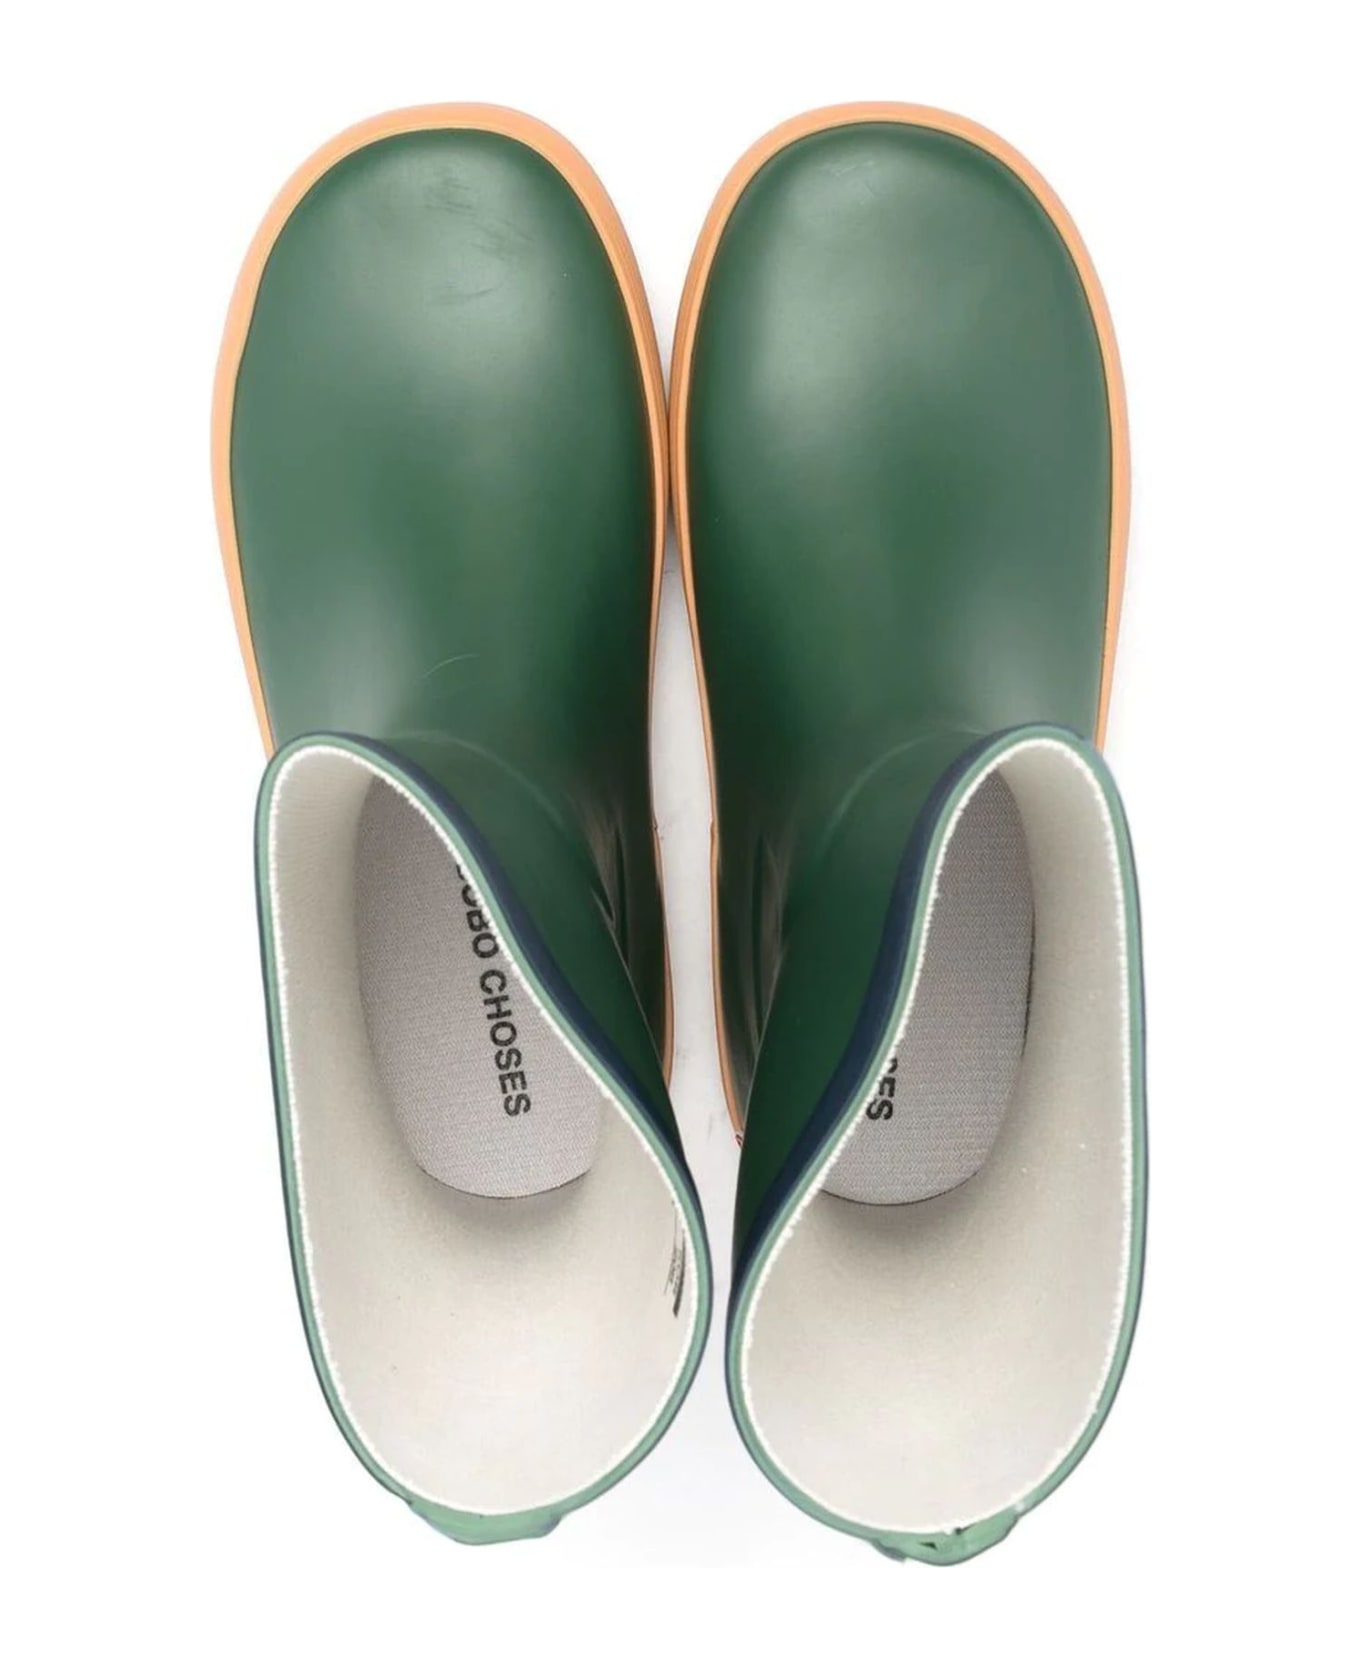 Bobo Choses Boots Green - Green シューズ